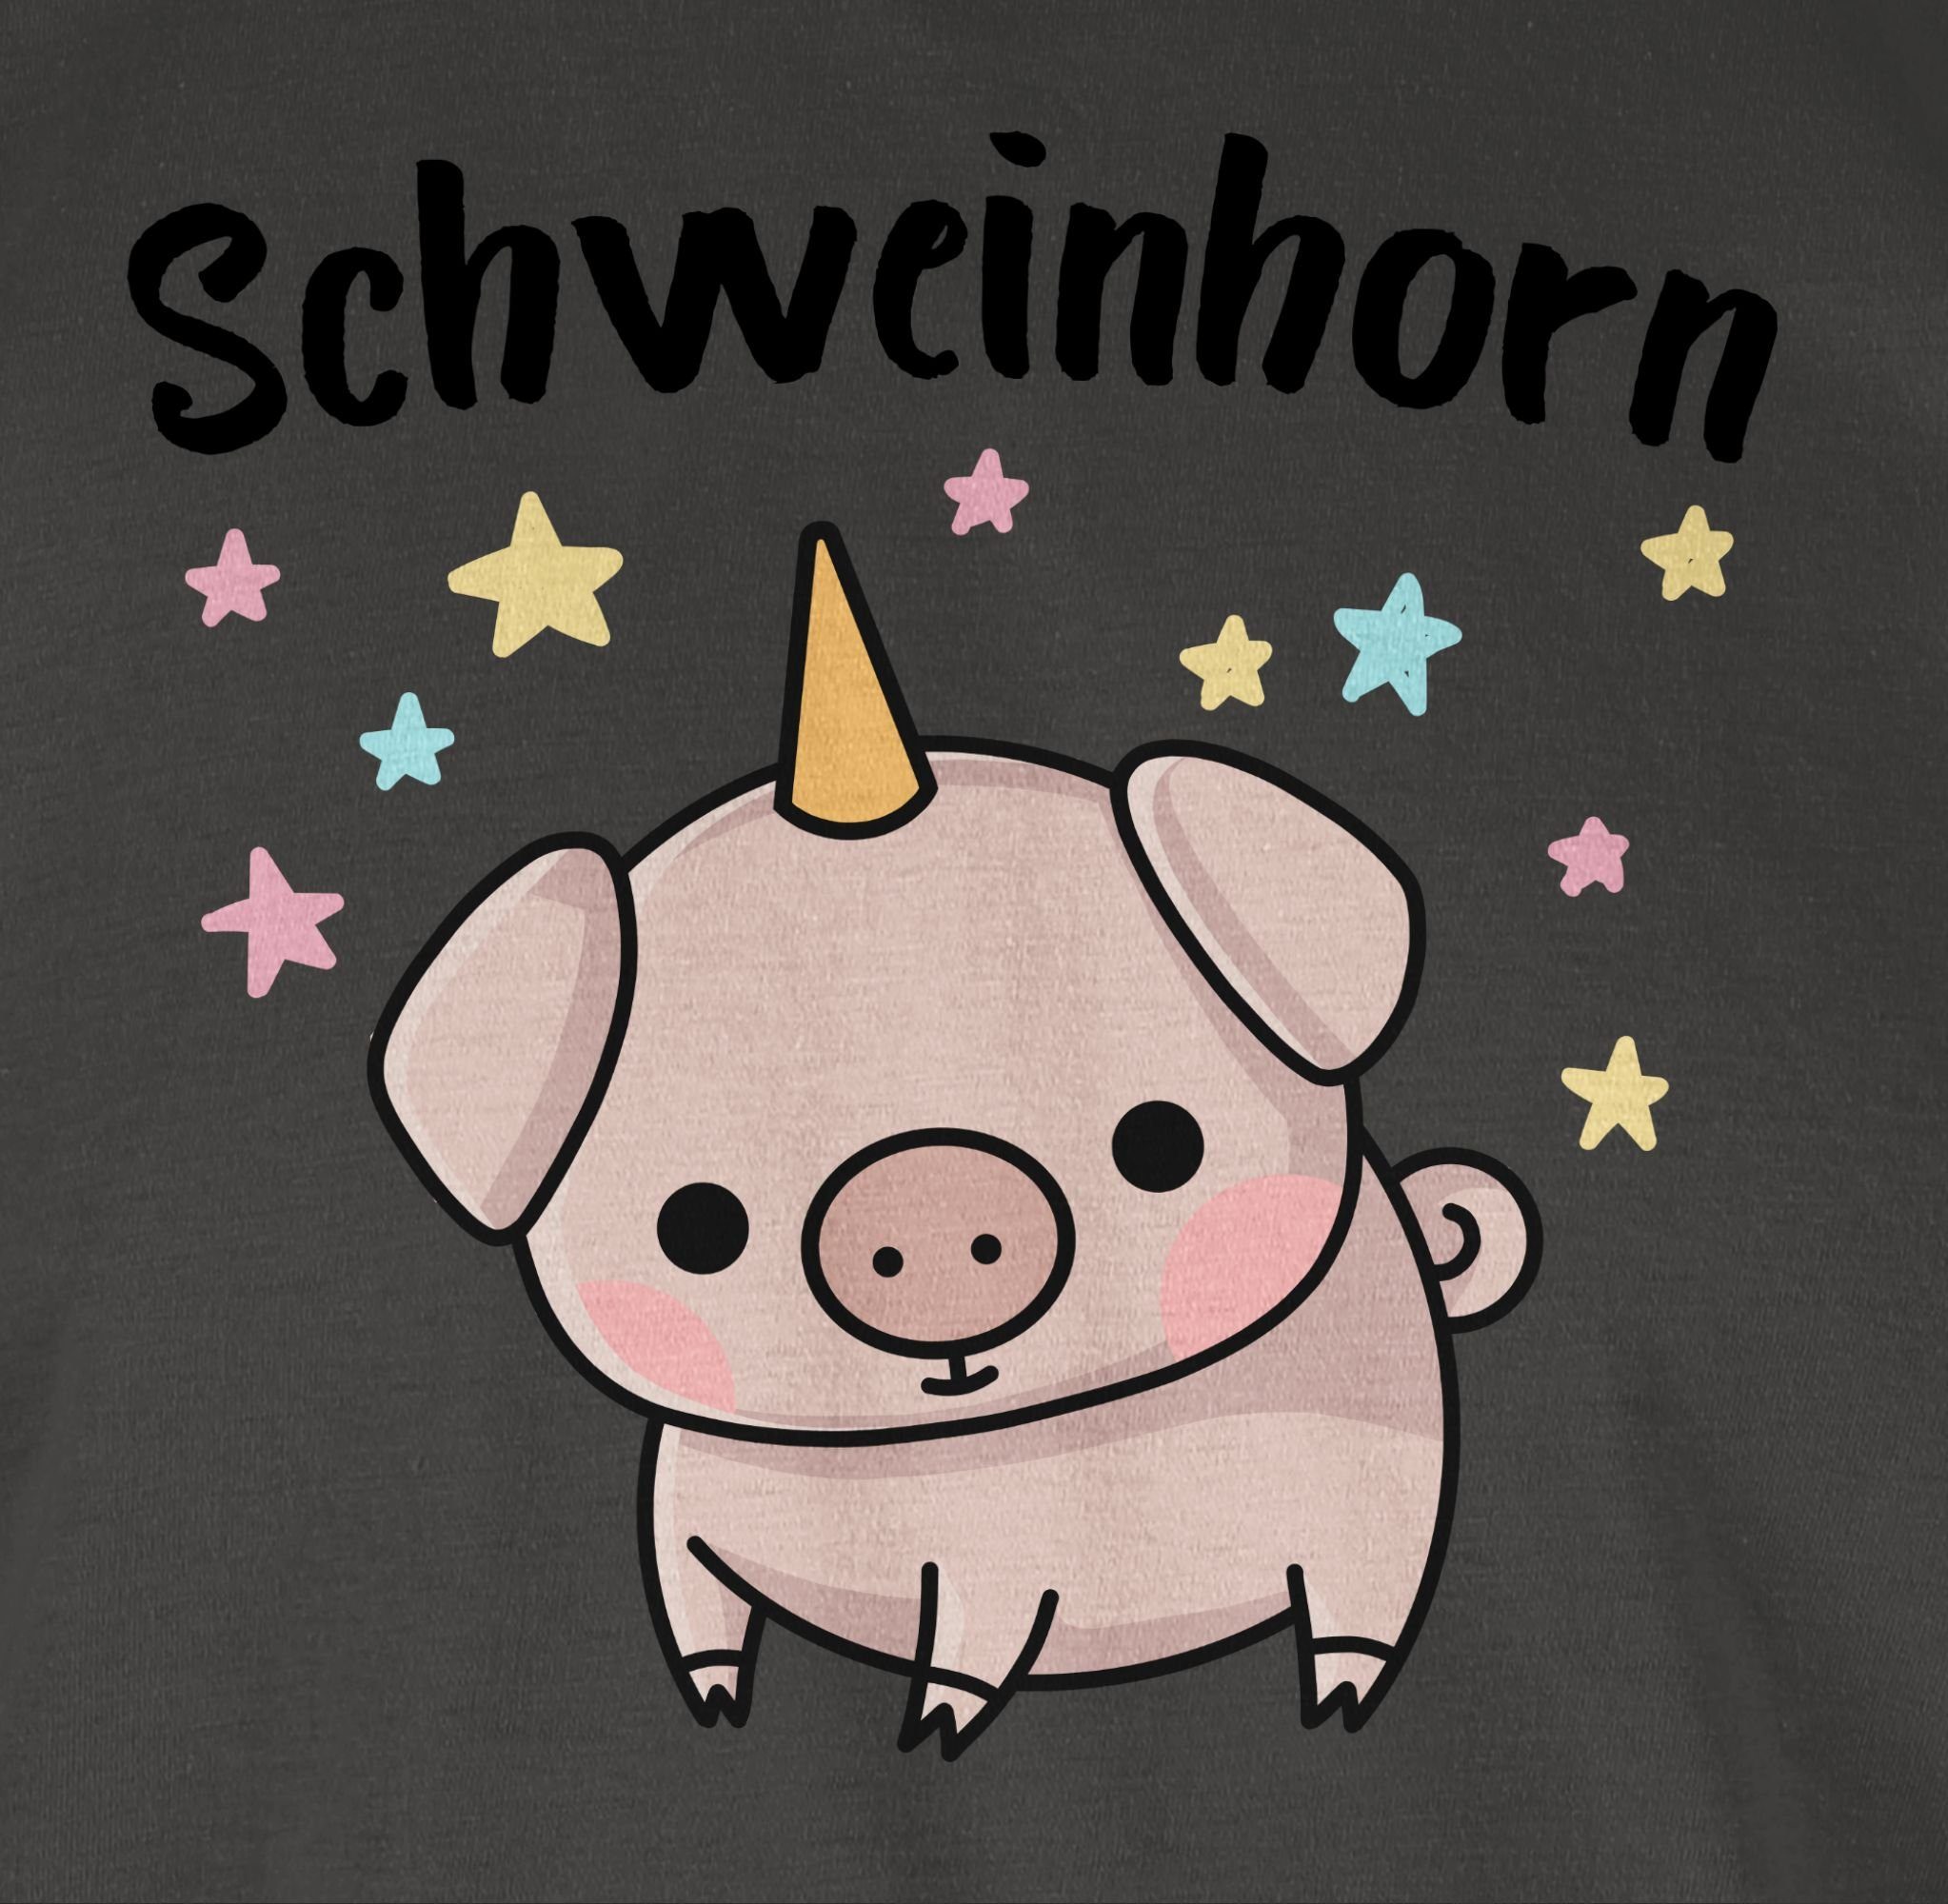 T-Shirt Schweinhorn Shirtracer Dunkelgrau Outfit 1 Karneval